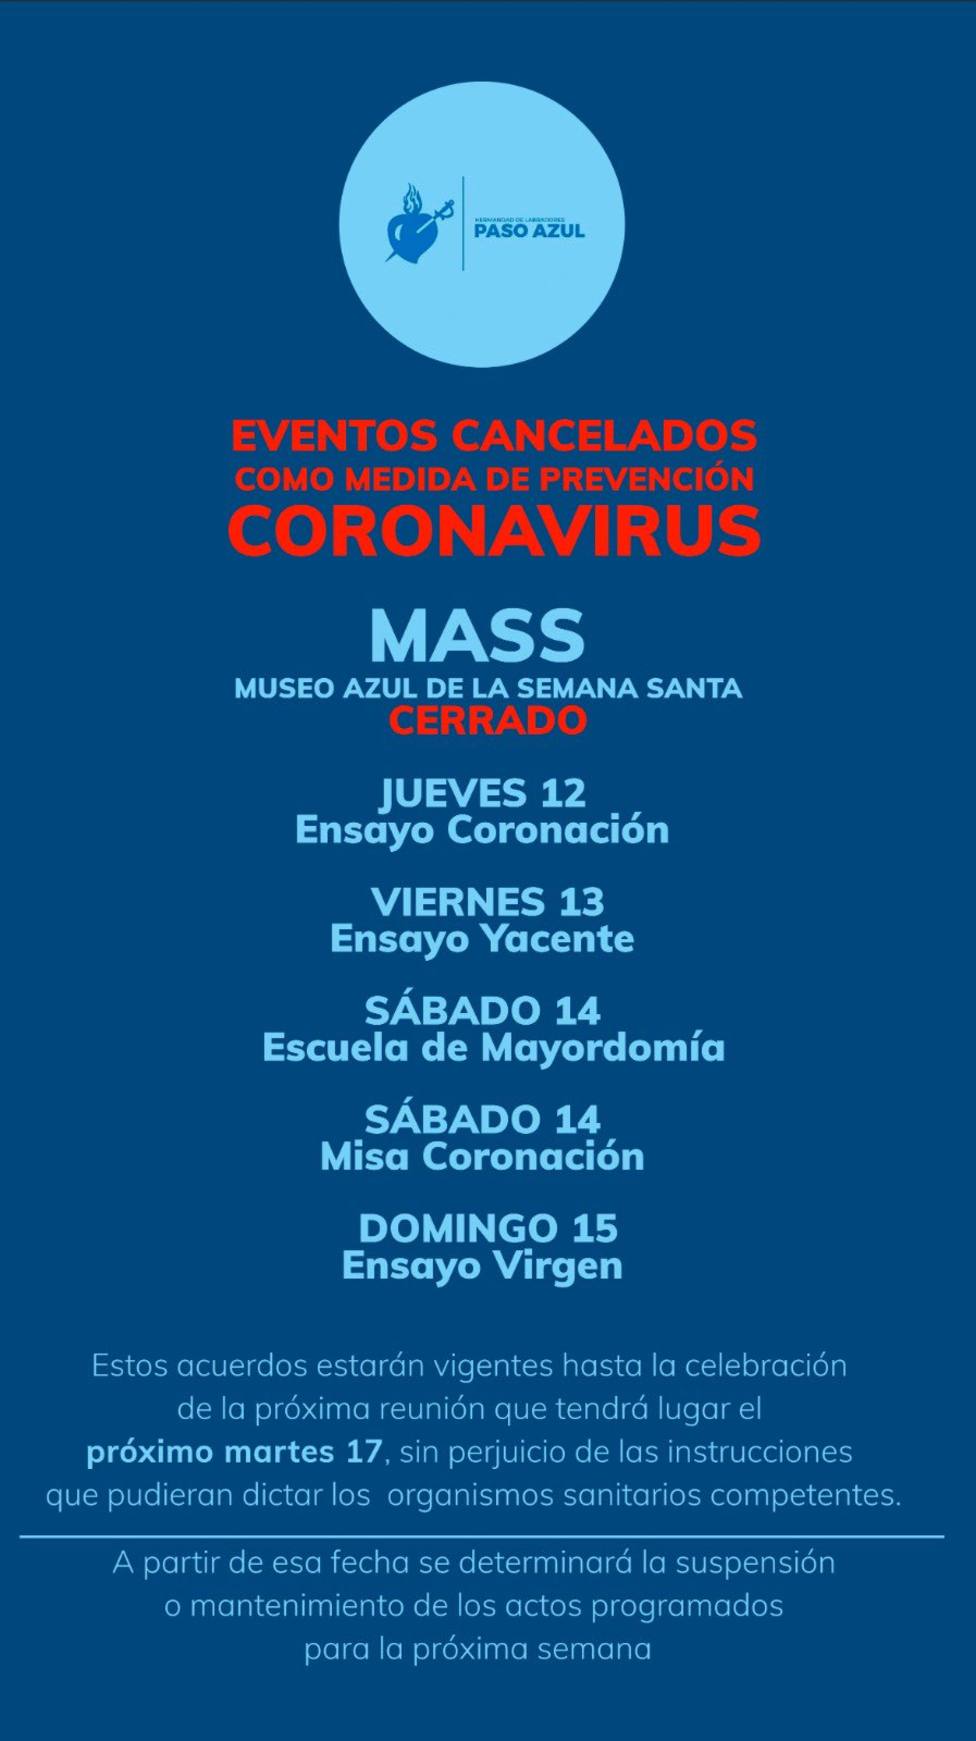 El Paso Azul cancela varios de sus eventos por el Coronavirus